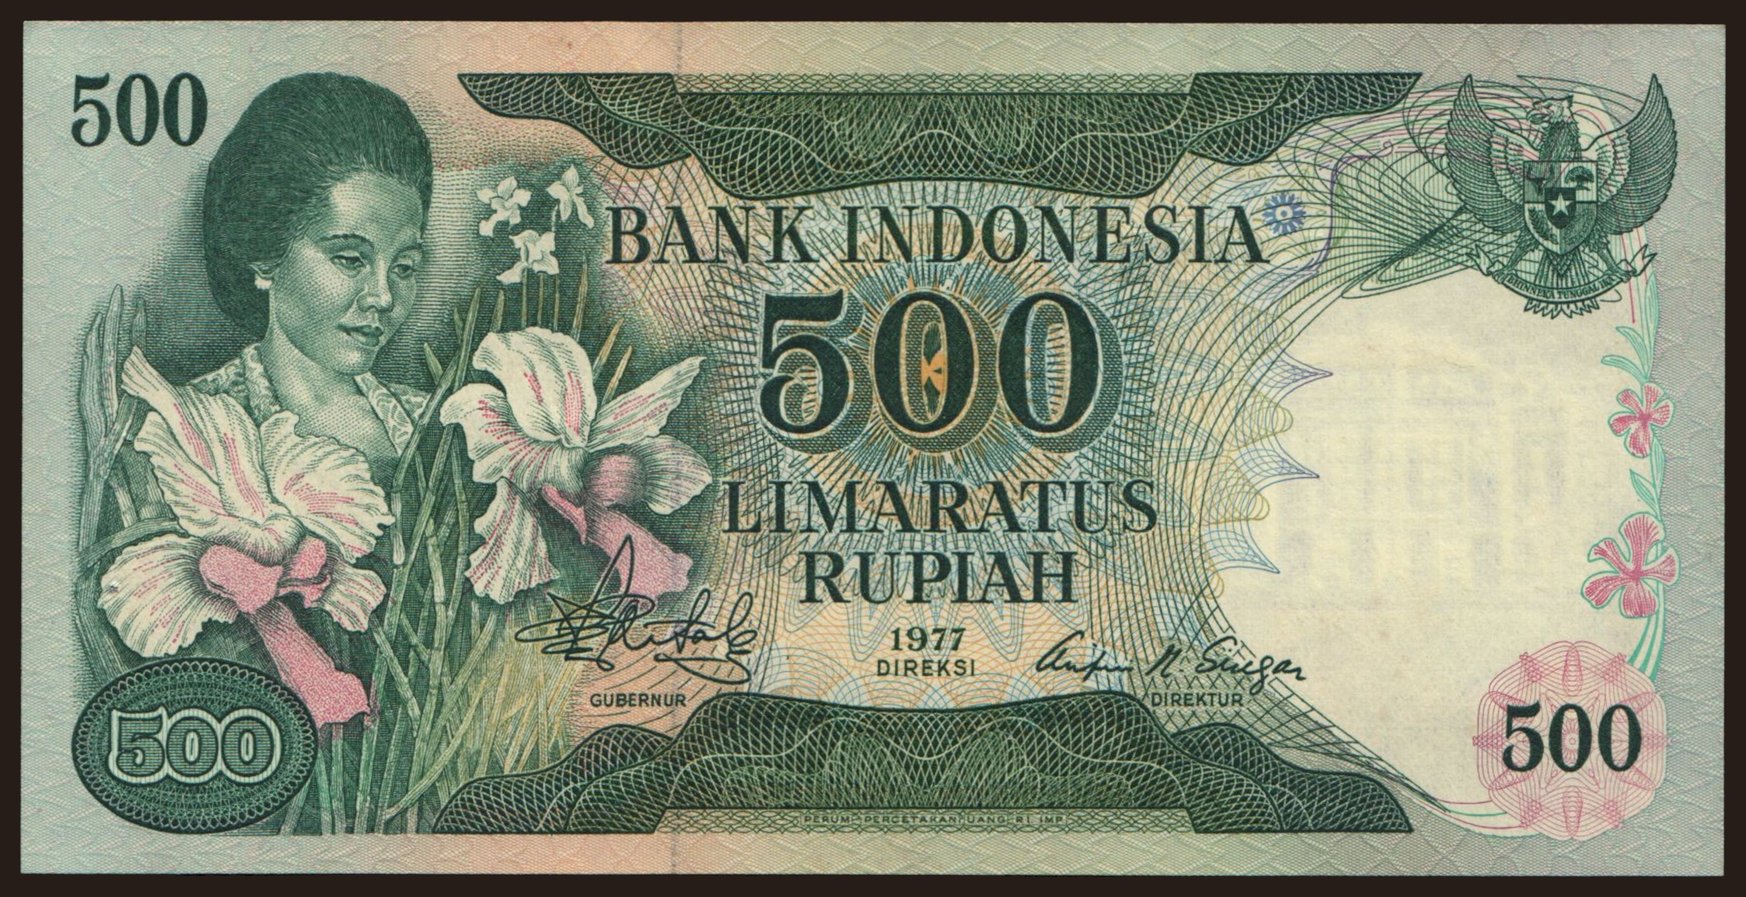 500 rupiah, 1977